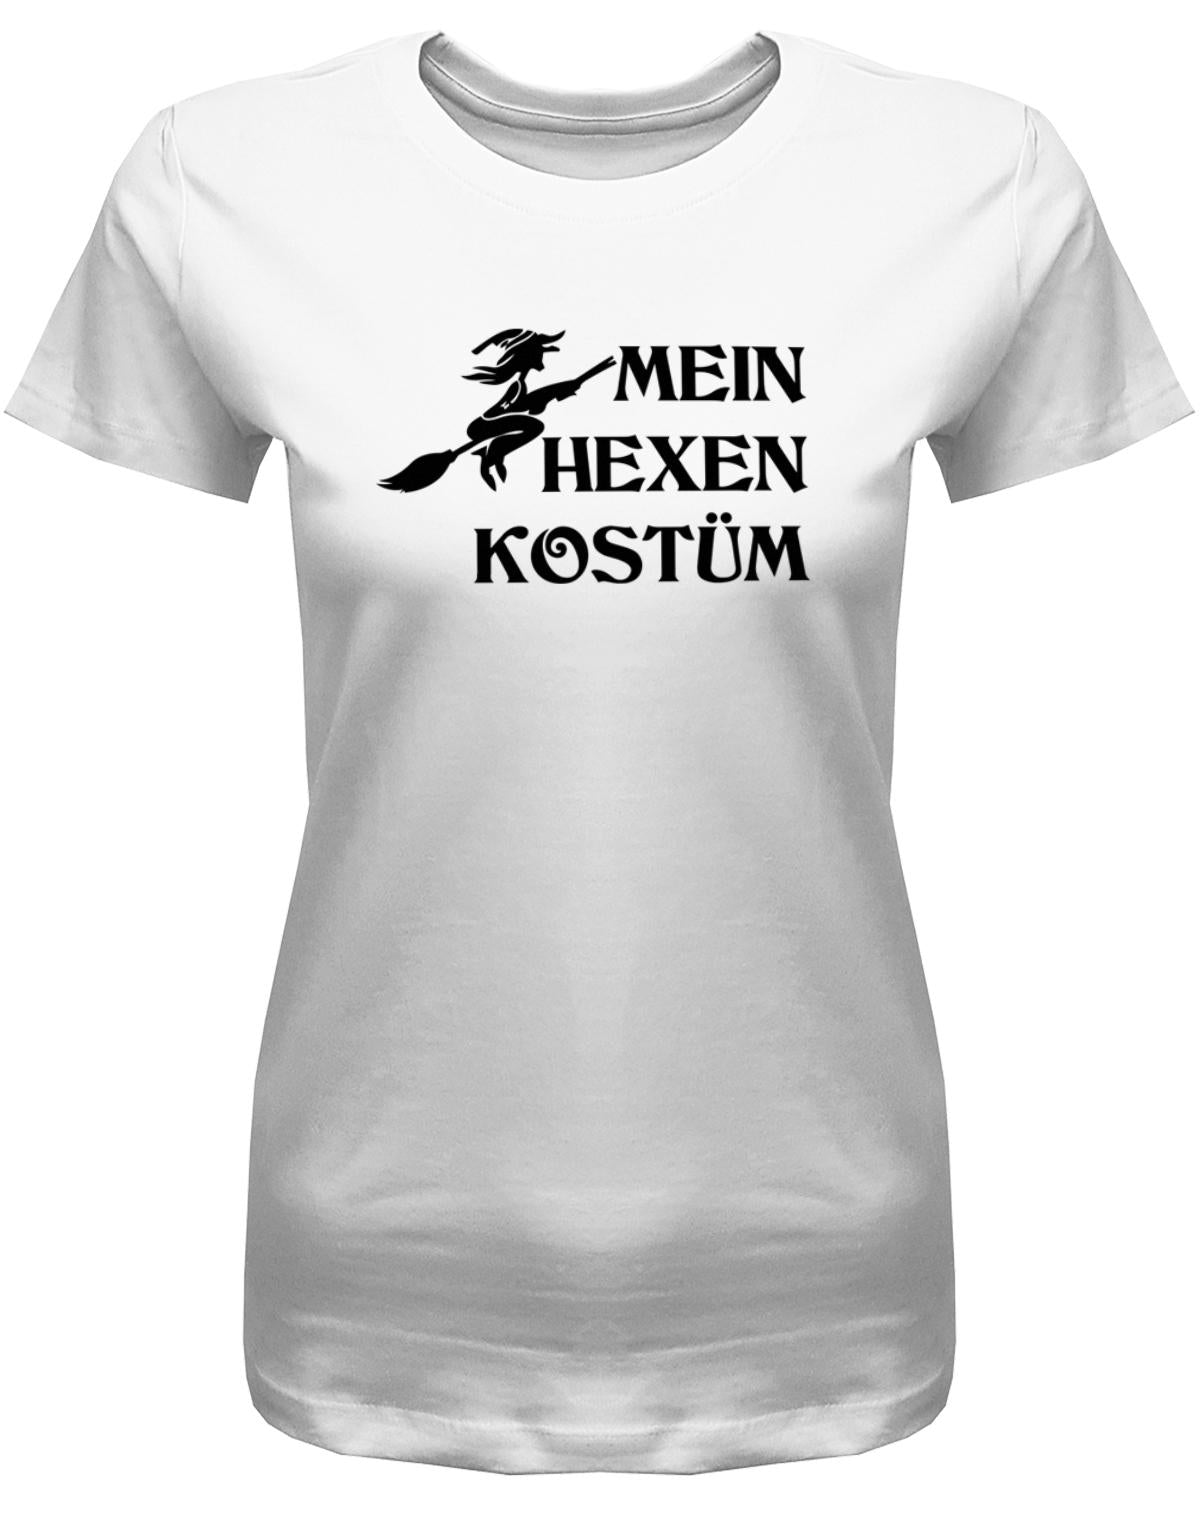 Mein-hexen-Kost-m-Damen-Shirt-Fasching-Karneval-Weiss